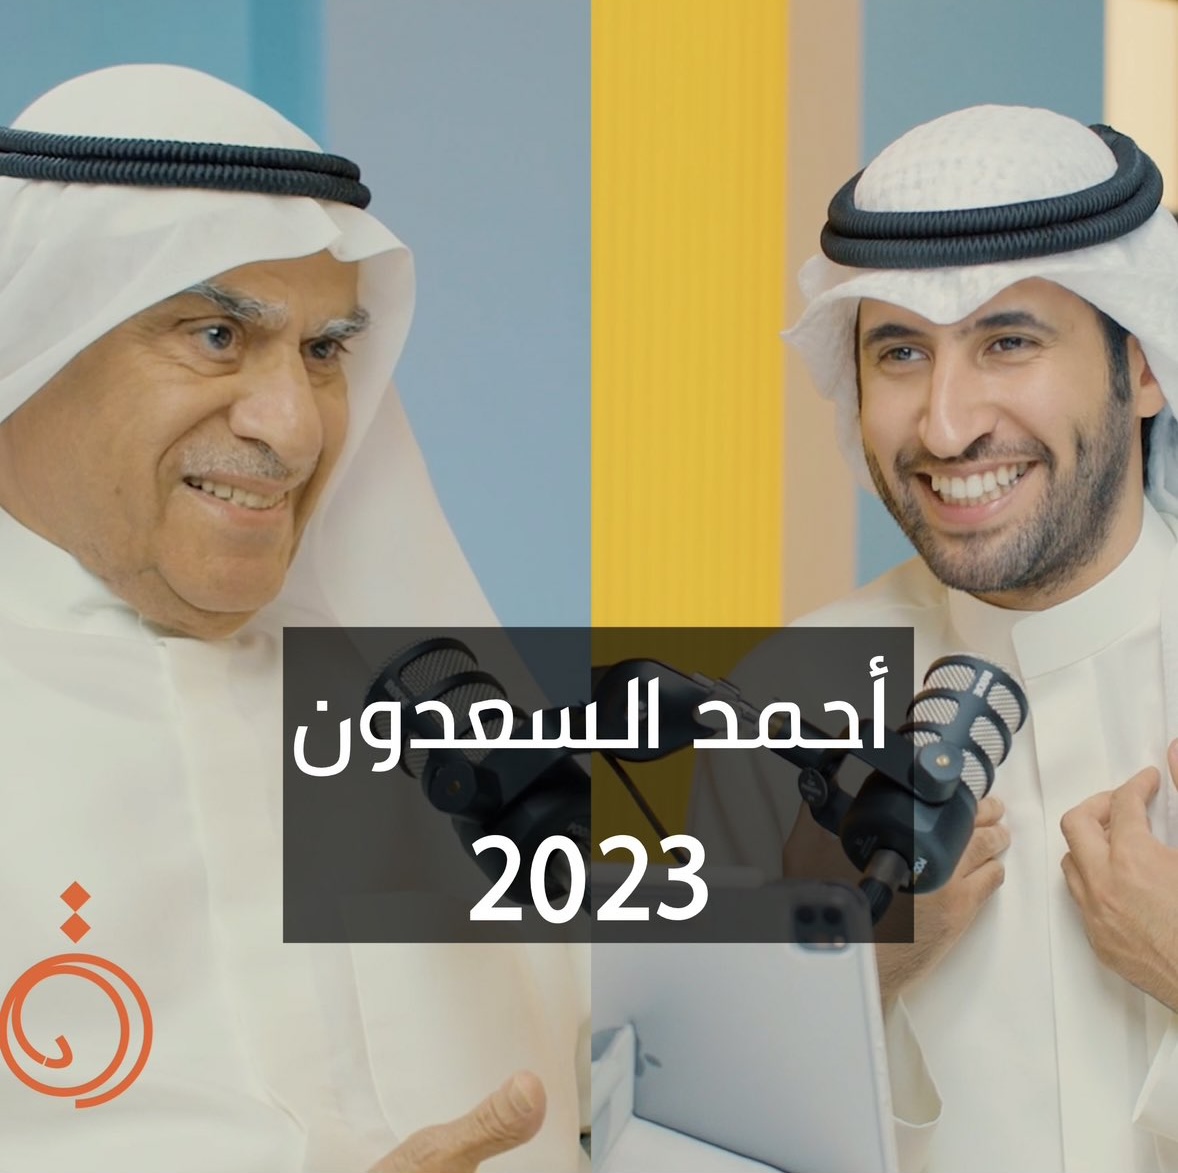 لقاء مع أحمد عبدالعزيز السعدون - بودكاست دائرة